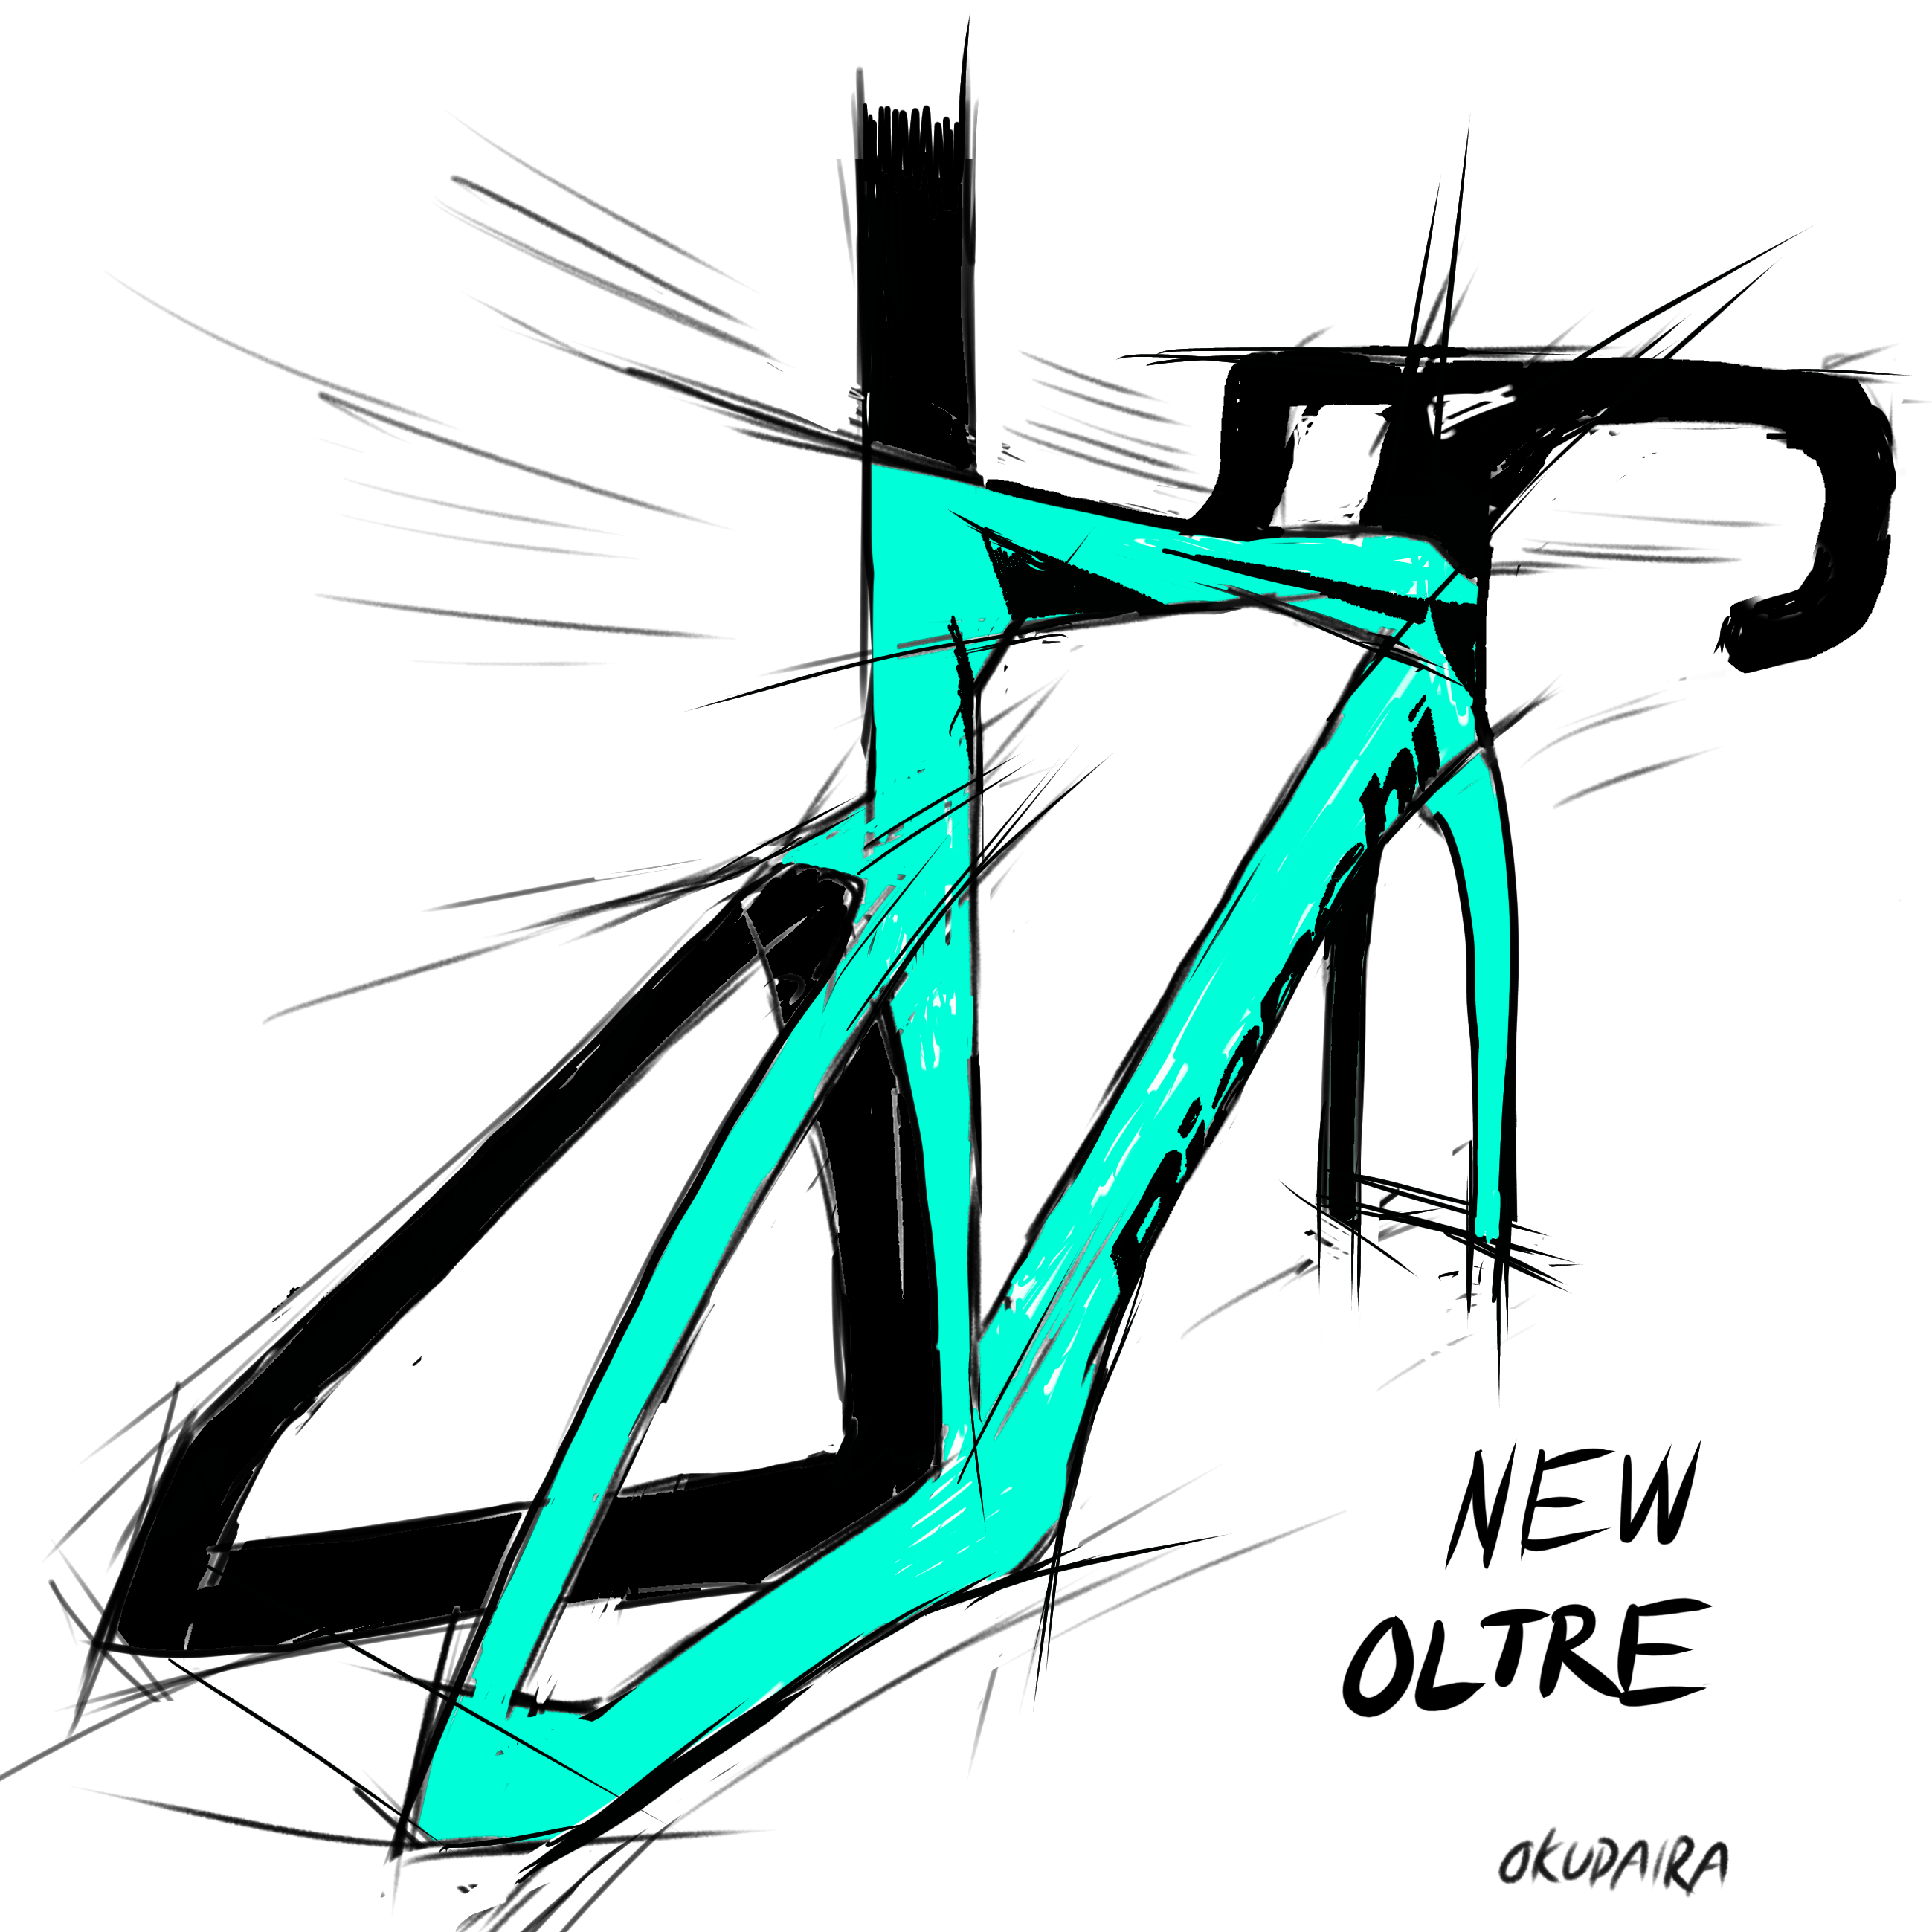 【Bianchi】異形のエアロロード新型OLTRE デザインから考えてみた ＋ インプレッション | 川崎で自転車をお探しならY